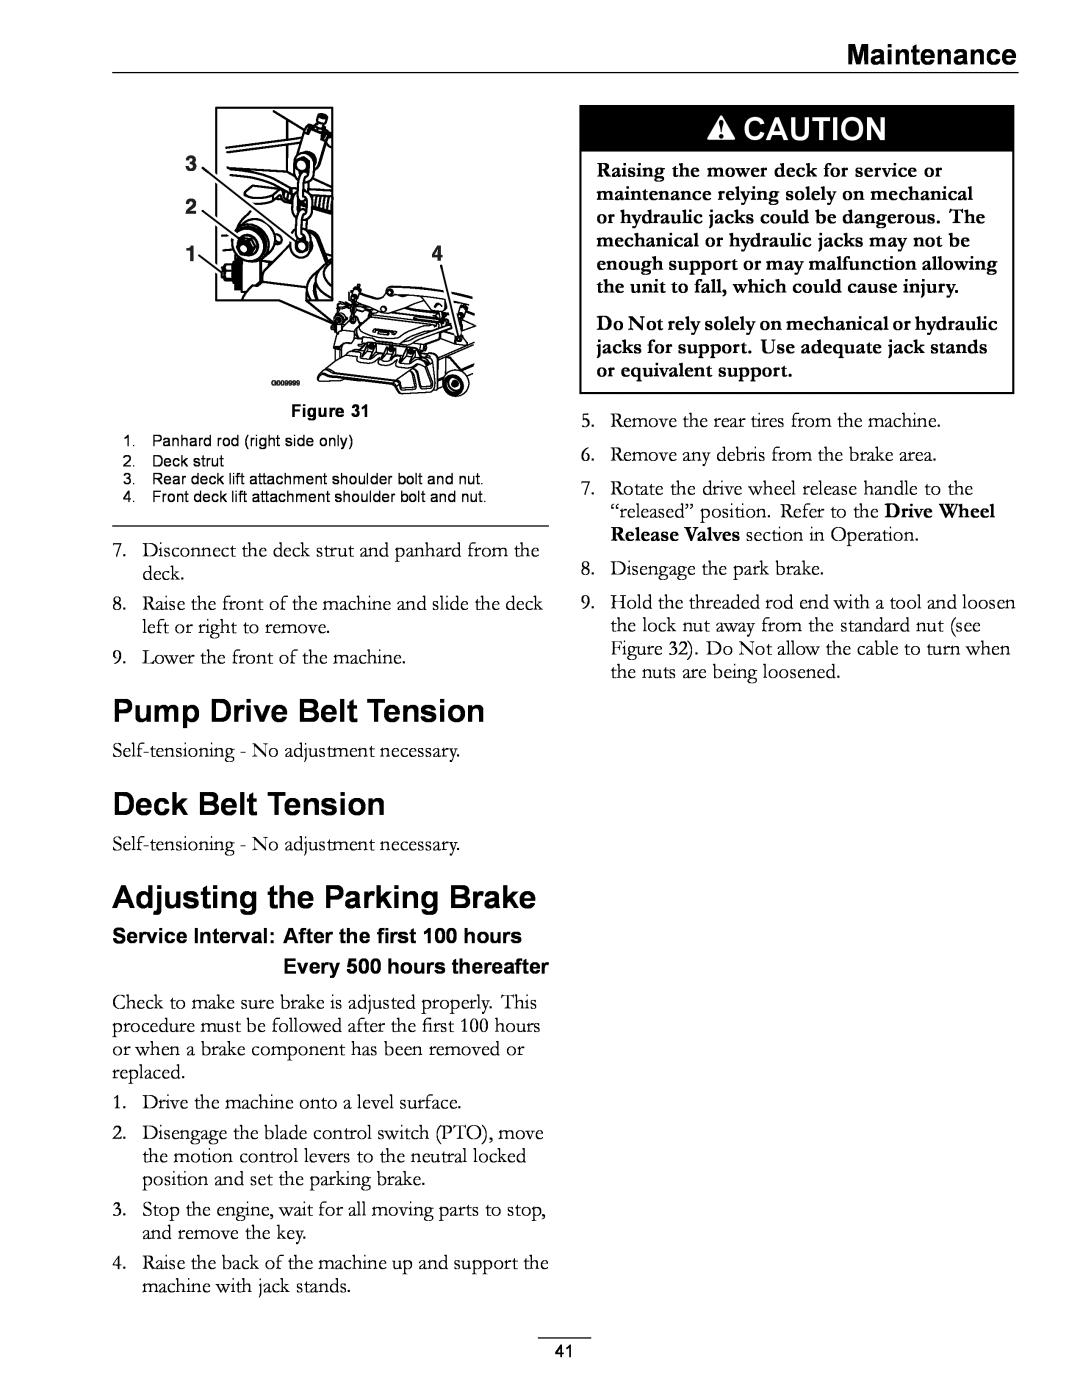 Exmark 000 & higher manual Pump Drive Belt Tension, Deck Belt Tension, Adjusting the Parking Brake, Maintenance 